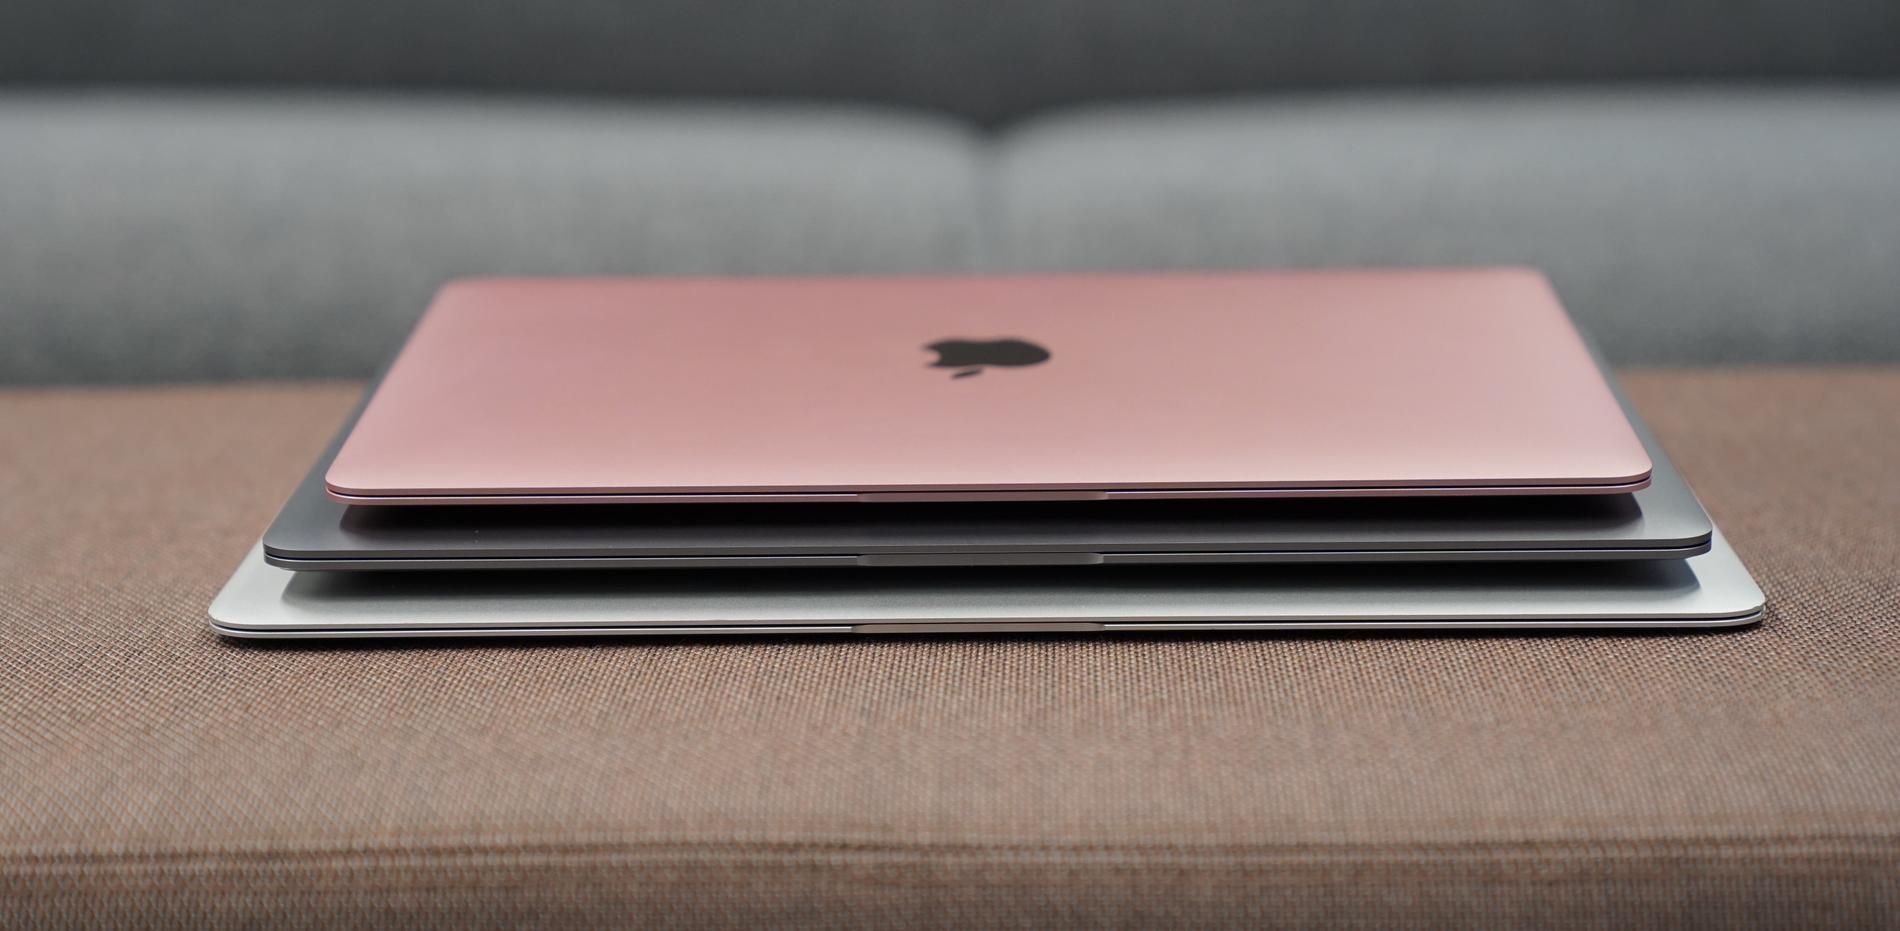 Macbook 12 är den minsta bärbara Macen, men nya Macbook Air (mitten) har kommit ned en bra bit i storlek.